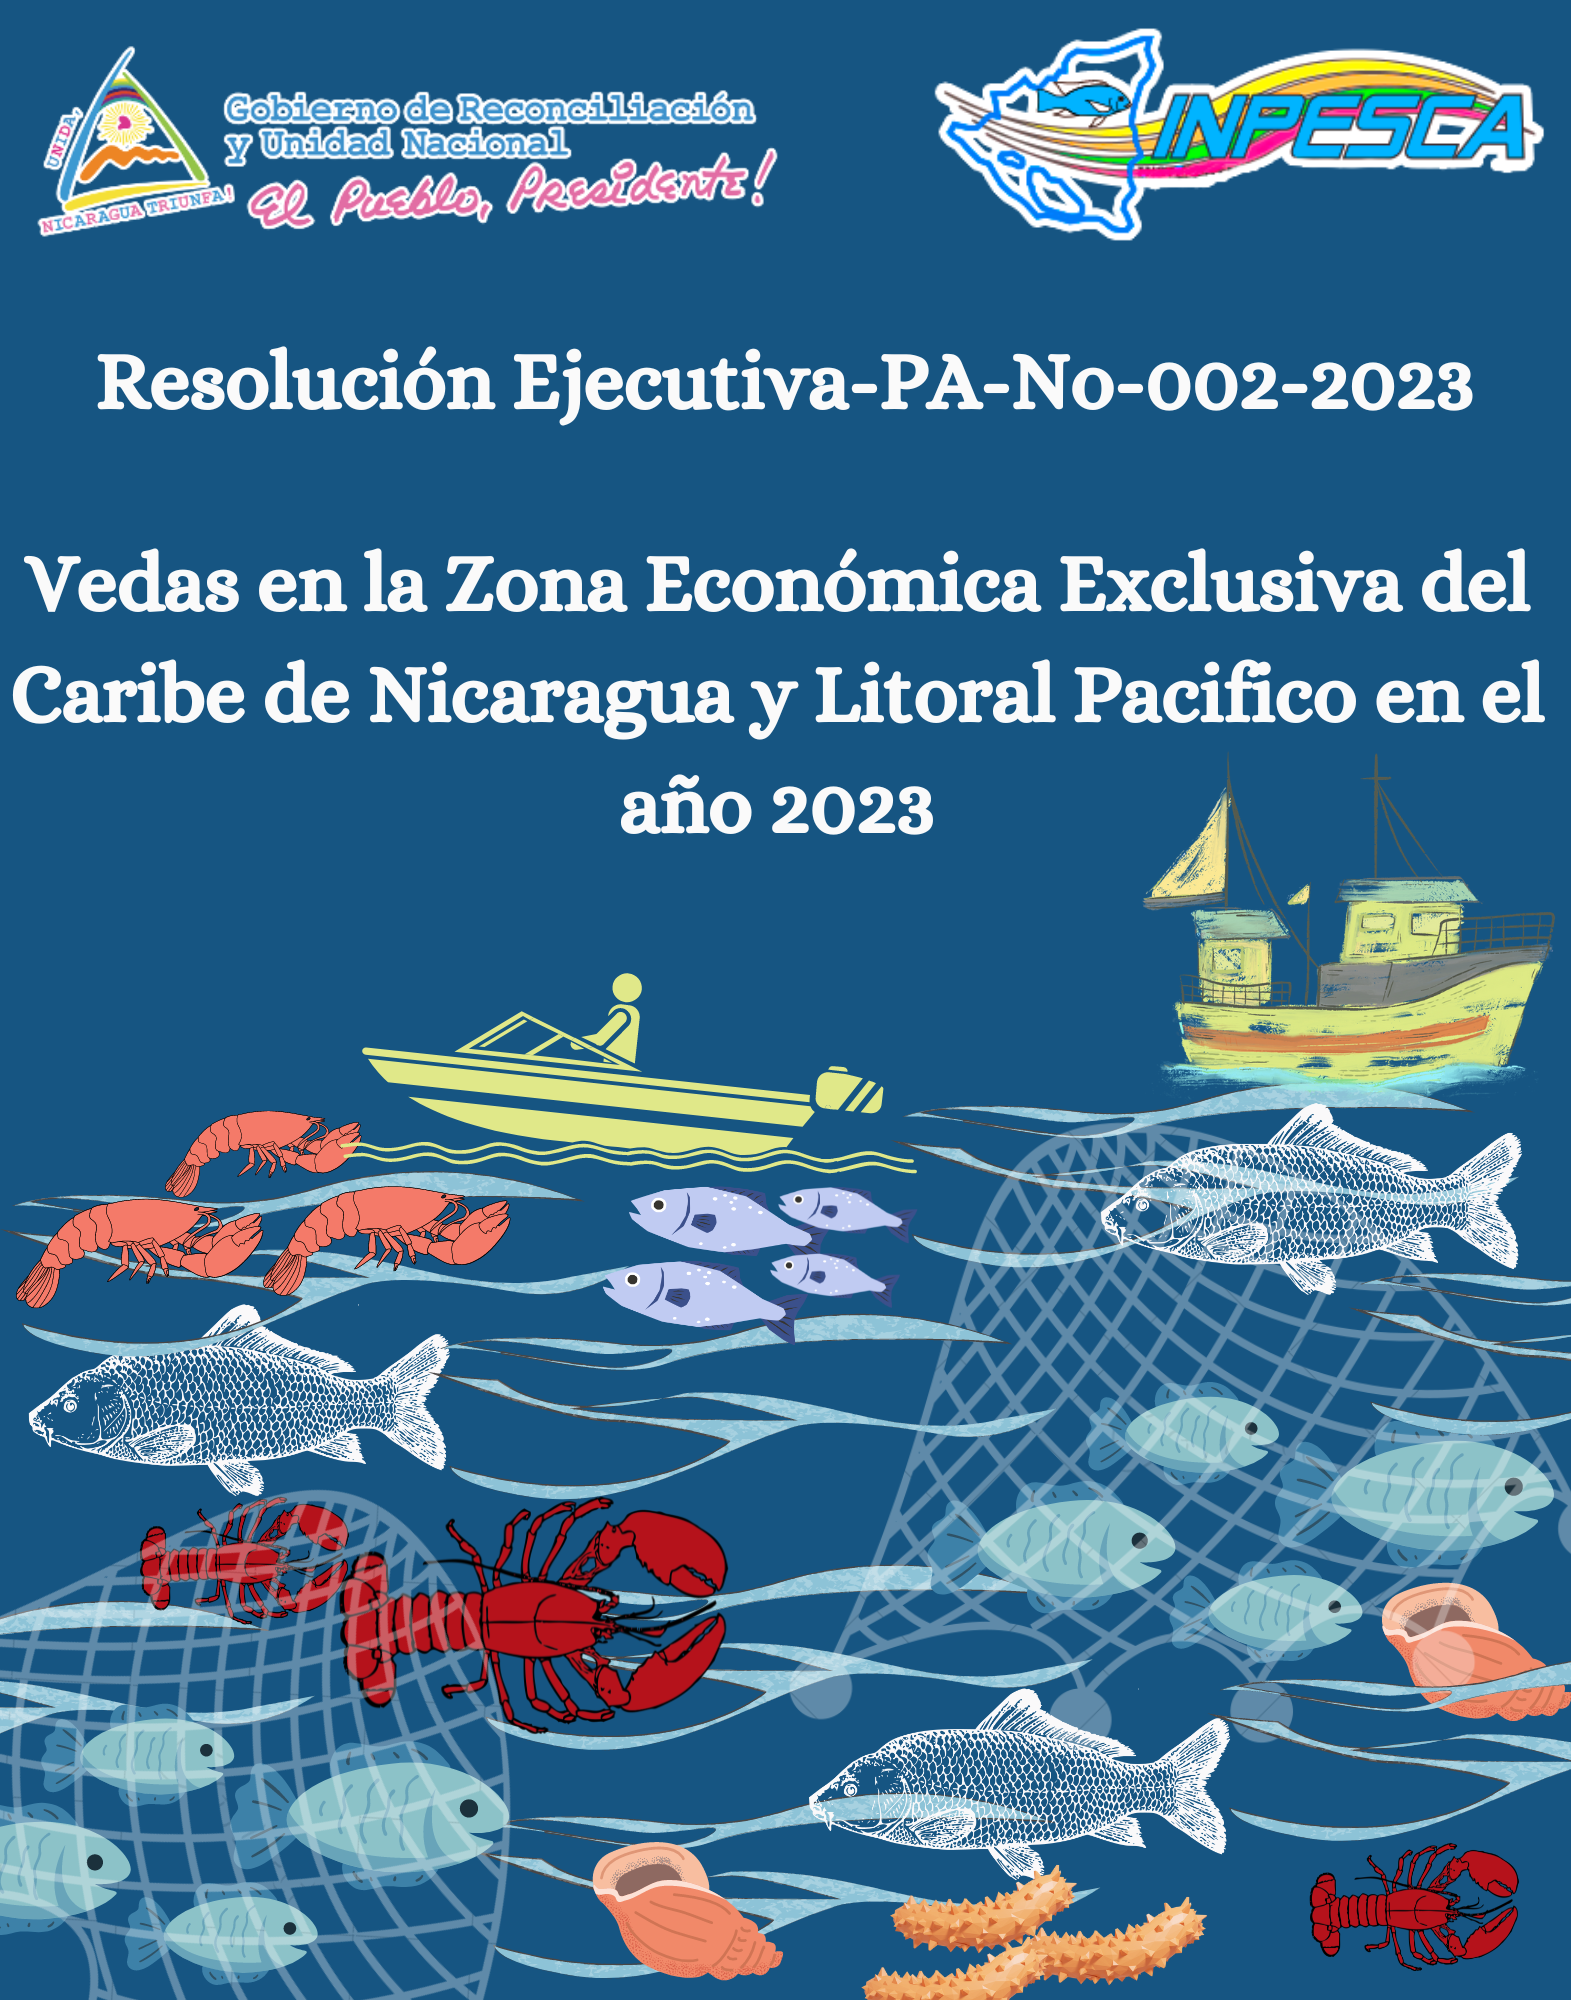 Resolución Ejecutiva No. 002-2023 Mecanismo para la Implementación de Vedas en la Zona Económica Exclusiva (ZEE) del Caribe de Nicaragua y en el Litoral Pacífico en el año 2023.